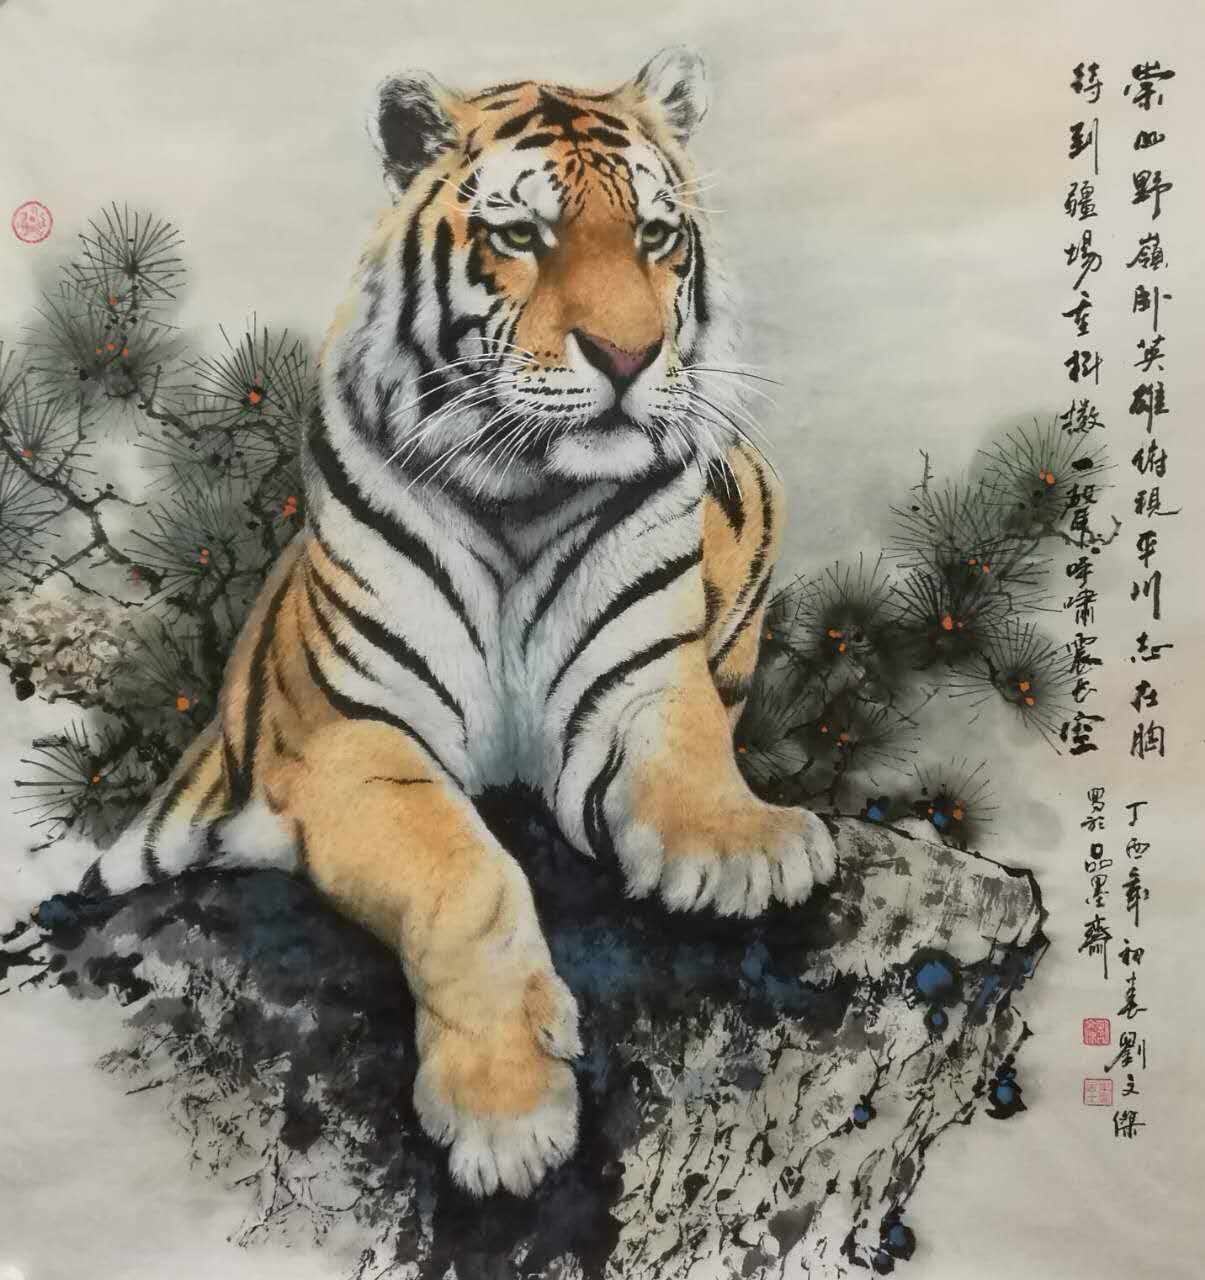 【作品展示】近年师从东北虎画家刘晓军老师和花鸟画家回立华老师学习